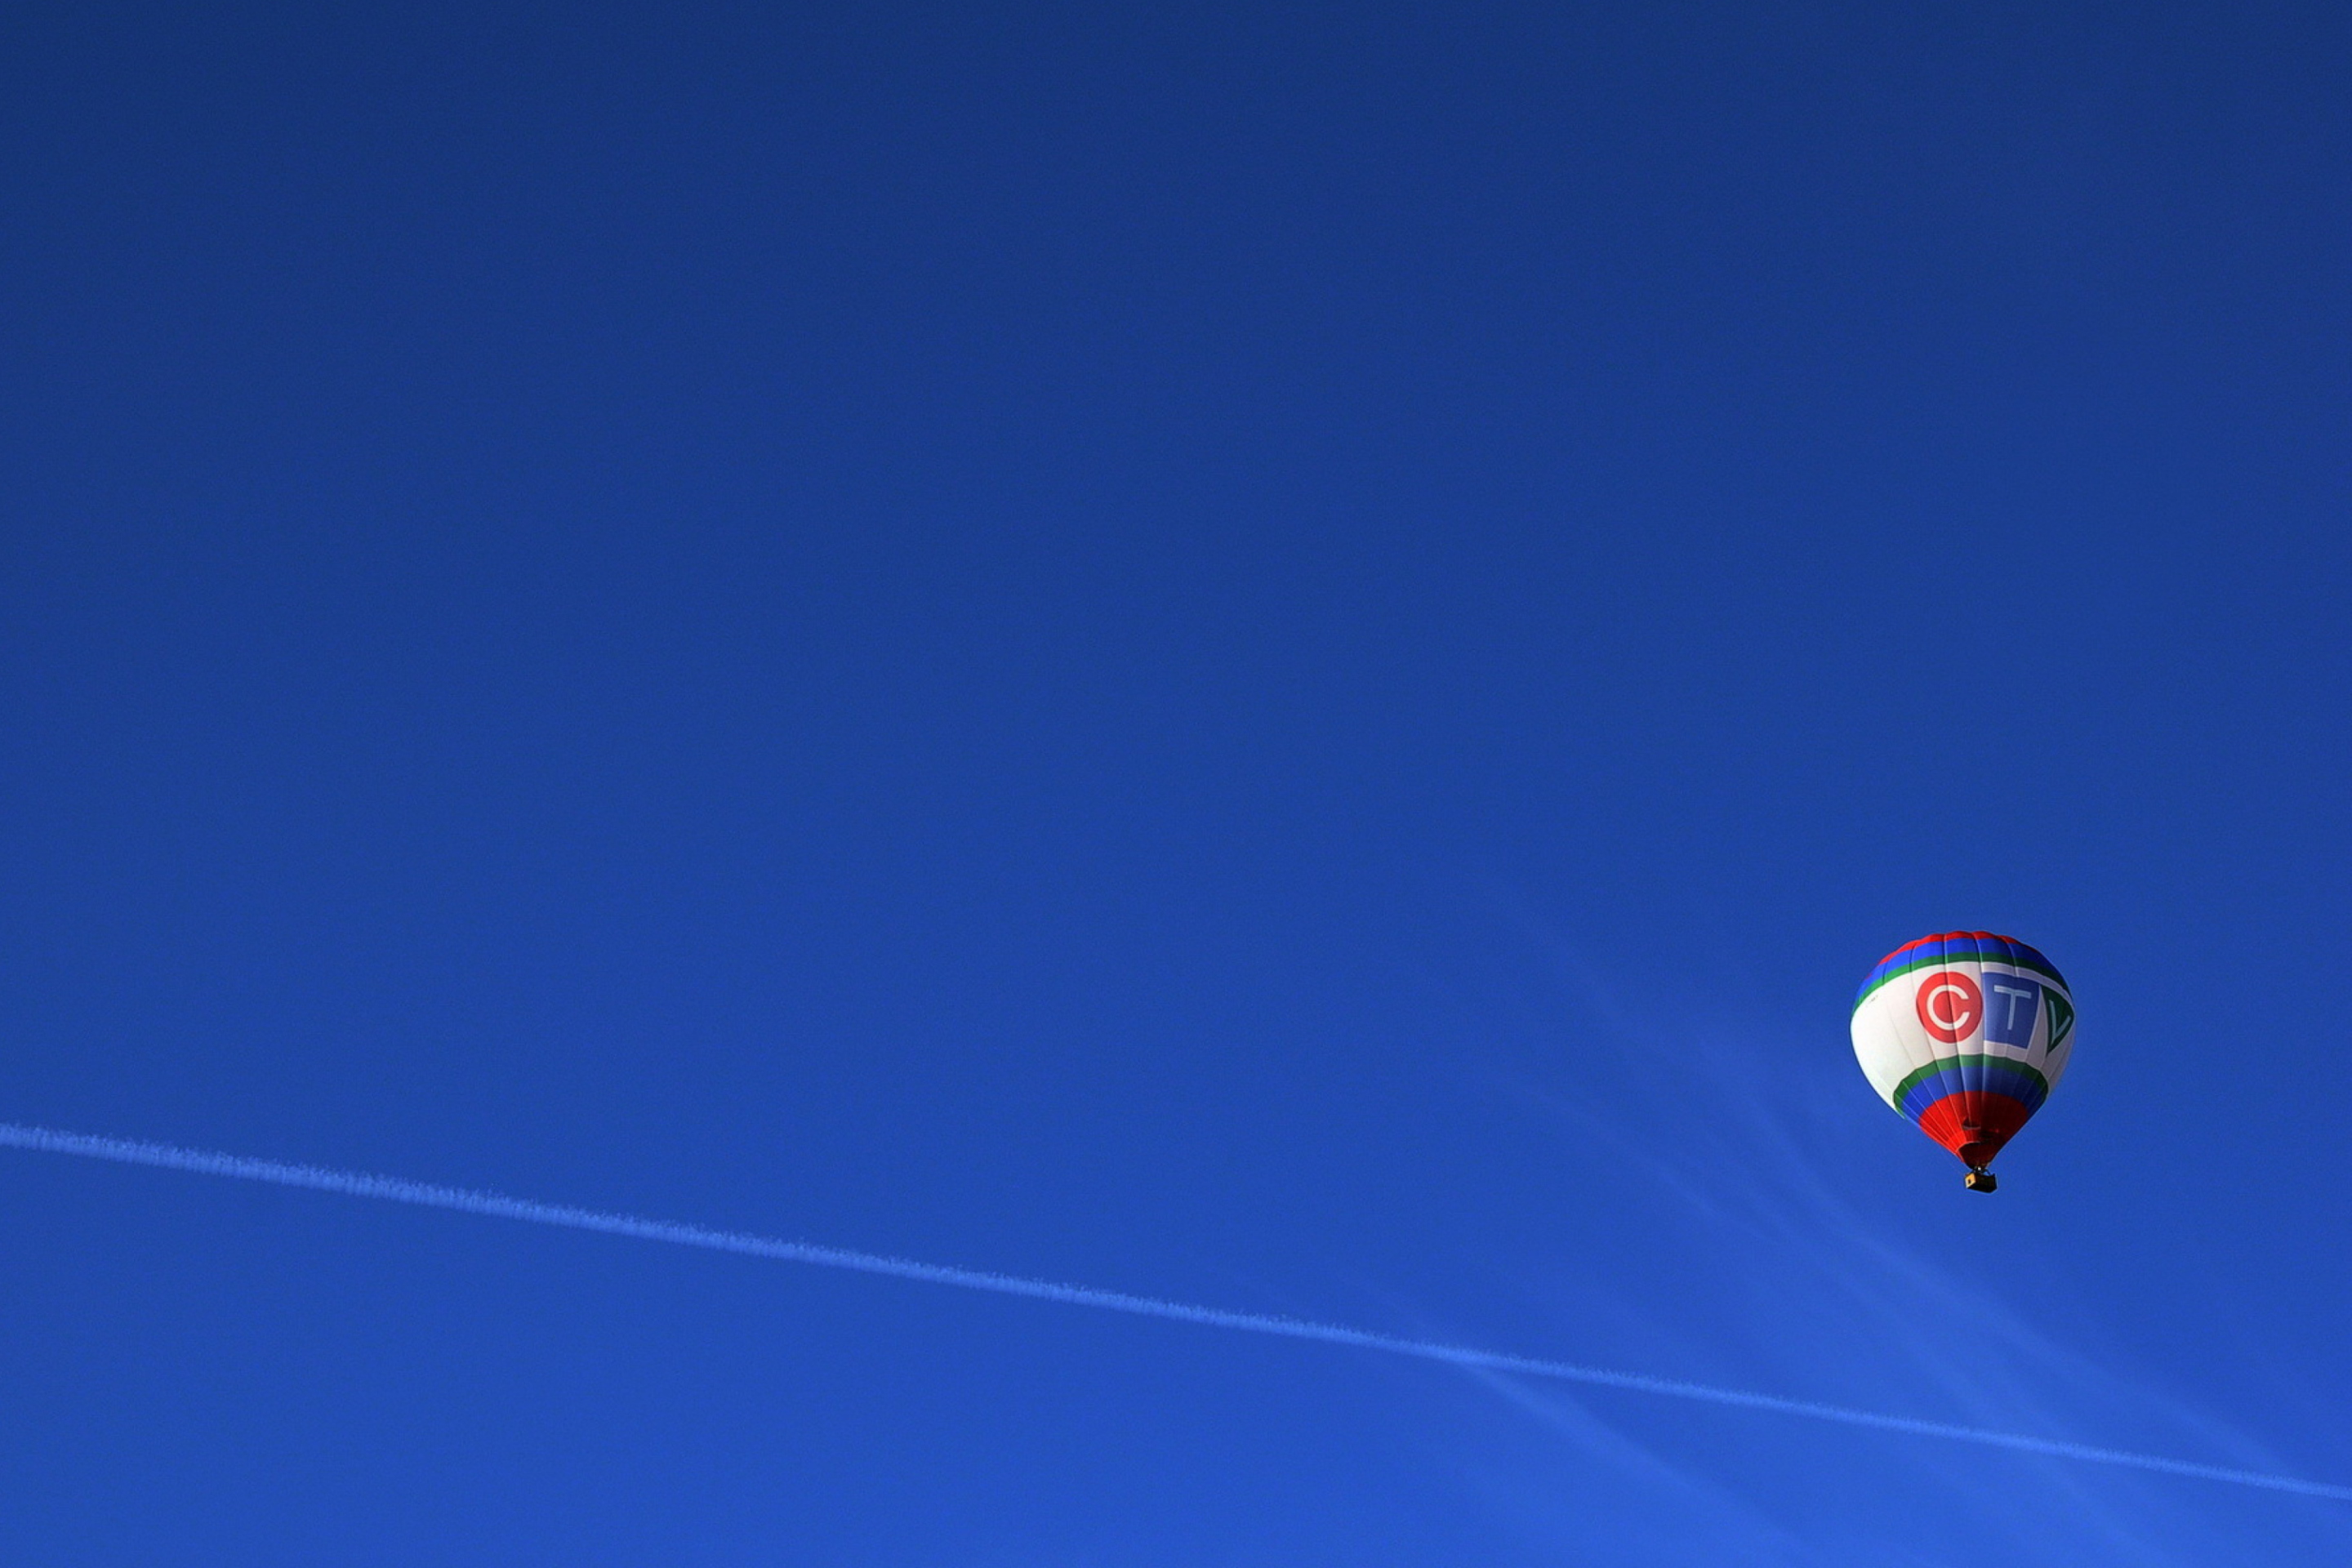 Обои Balloon In Blue Sky 2880x1920